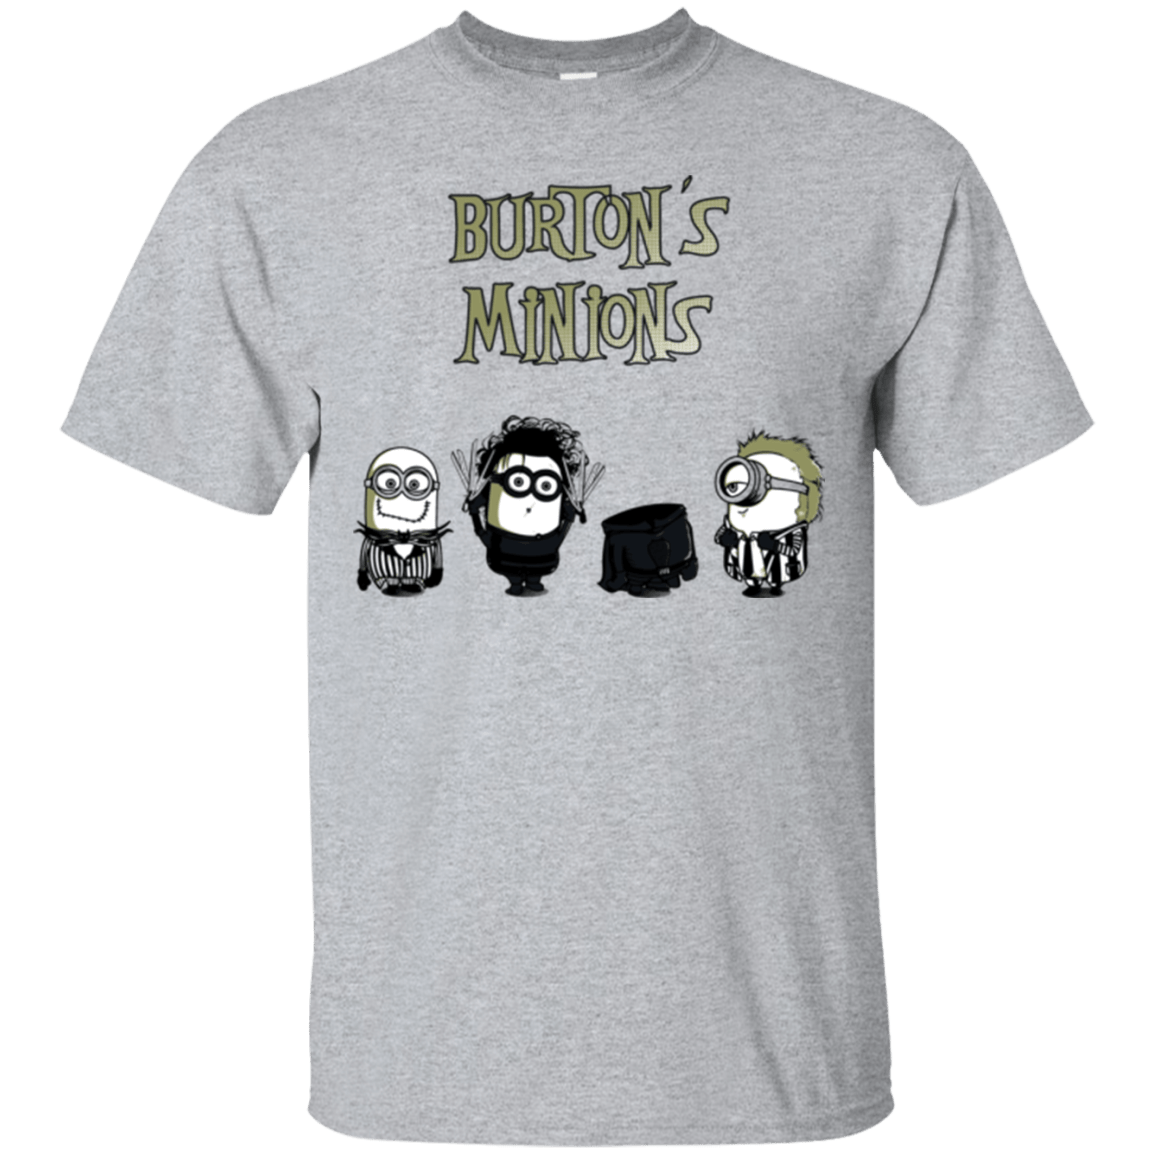 T-Shirts Sport Grey / Small Burton's Minions T-Shirt